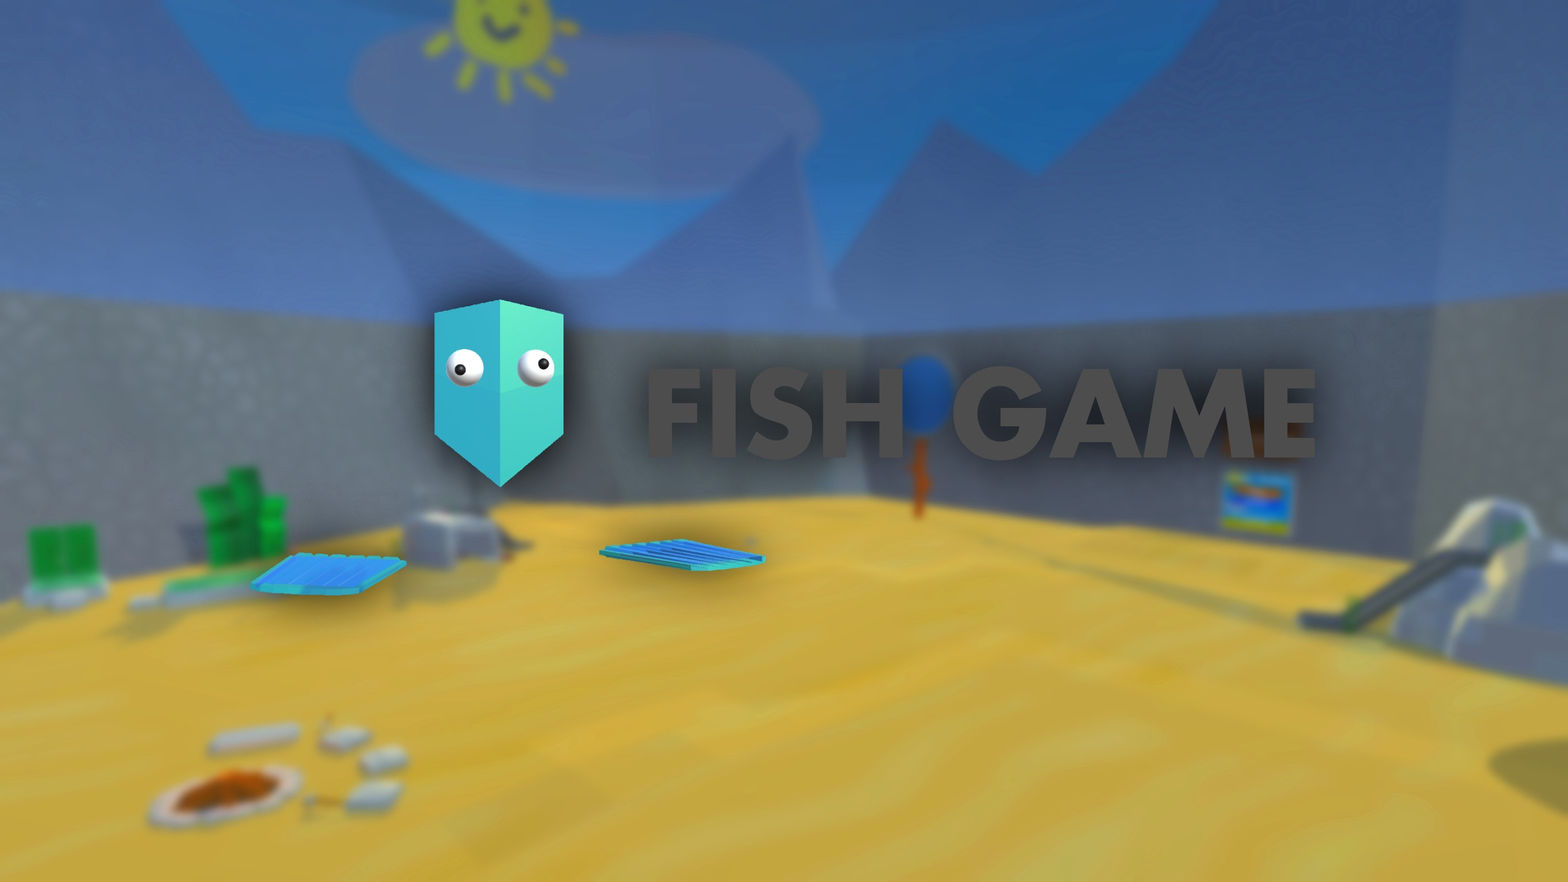 Fish Game